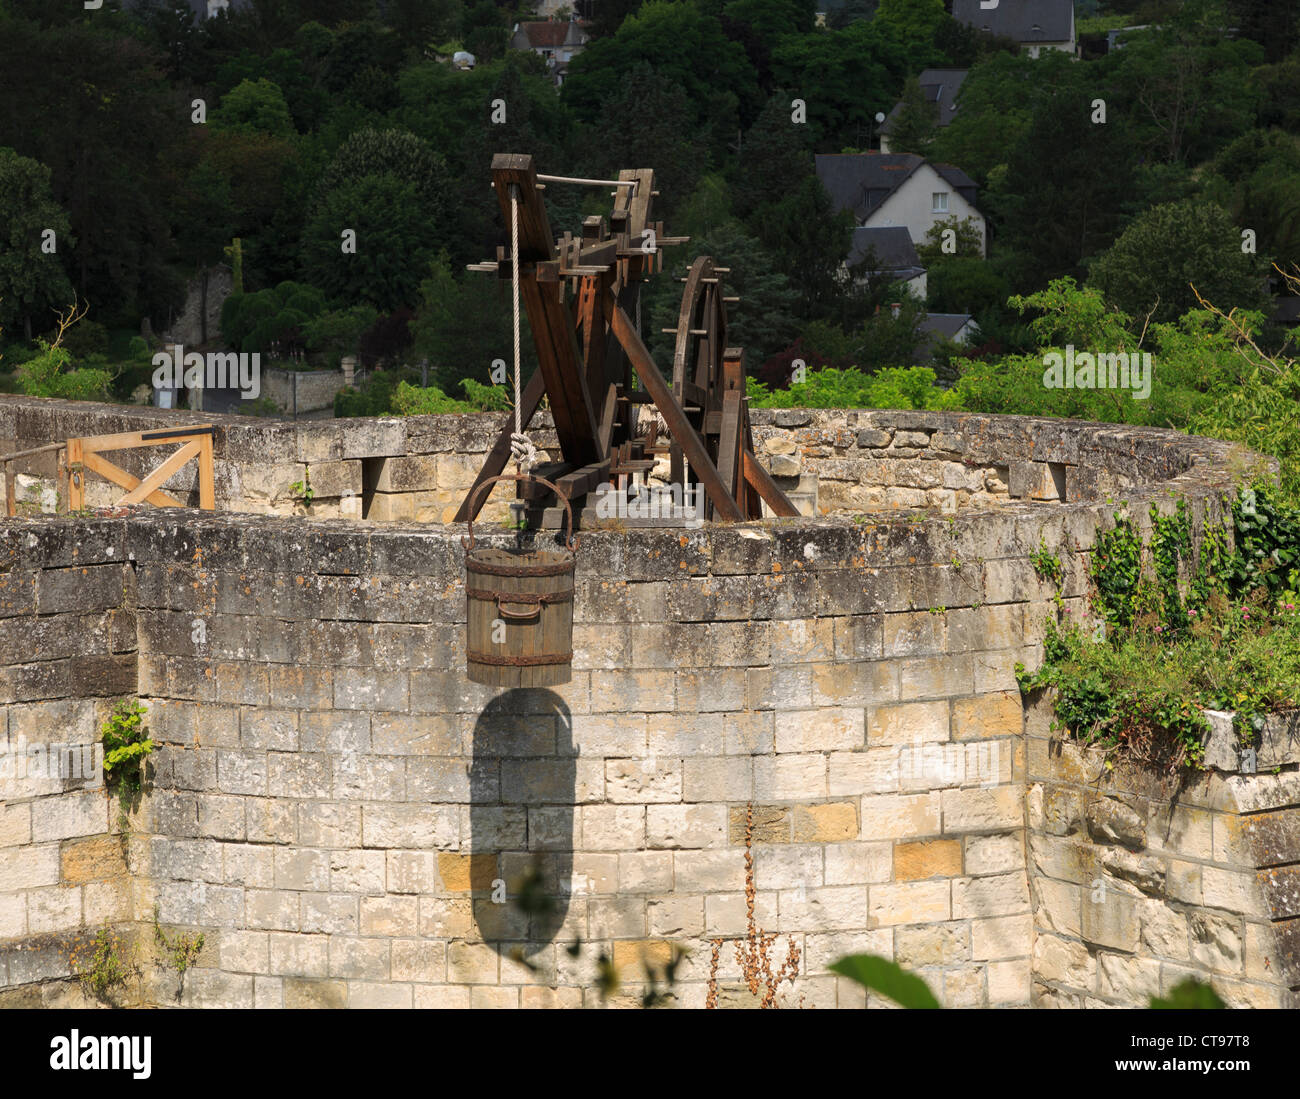 Heben die Maschine, Chinon, Loiretal, Frankreich, Replik einer Maschine zum Heben von Baustoffen im Mittelalter verwendet. Stockfoto